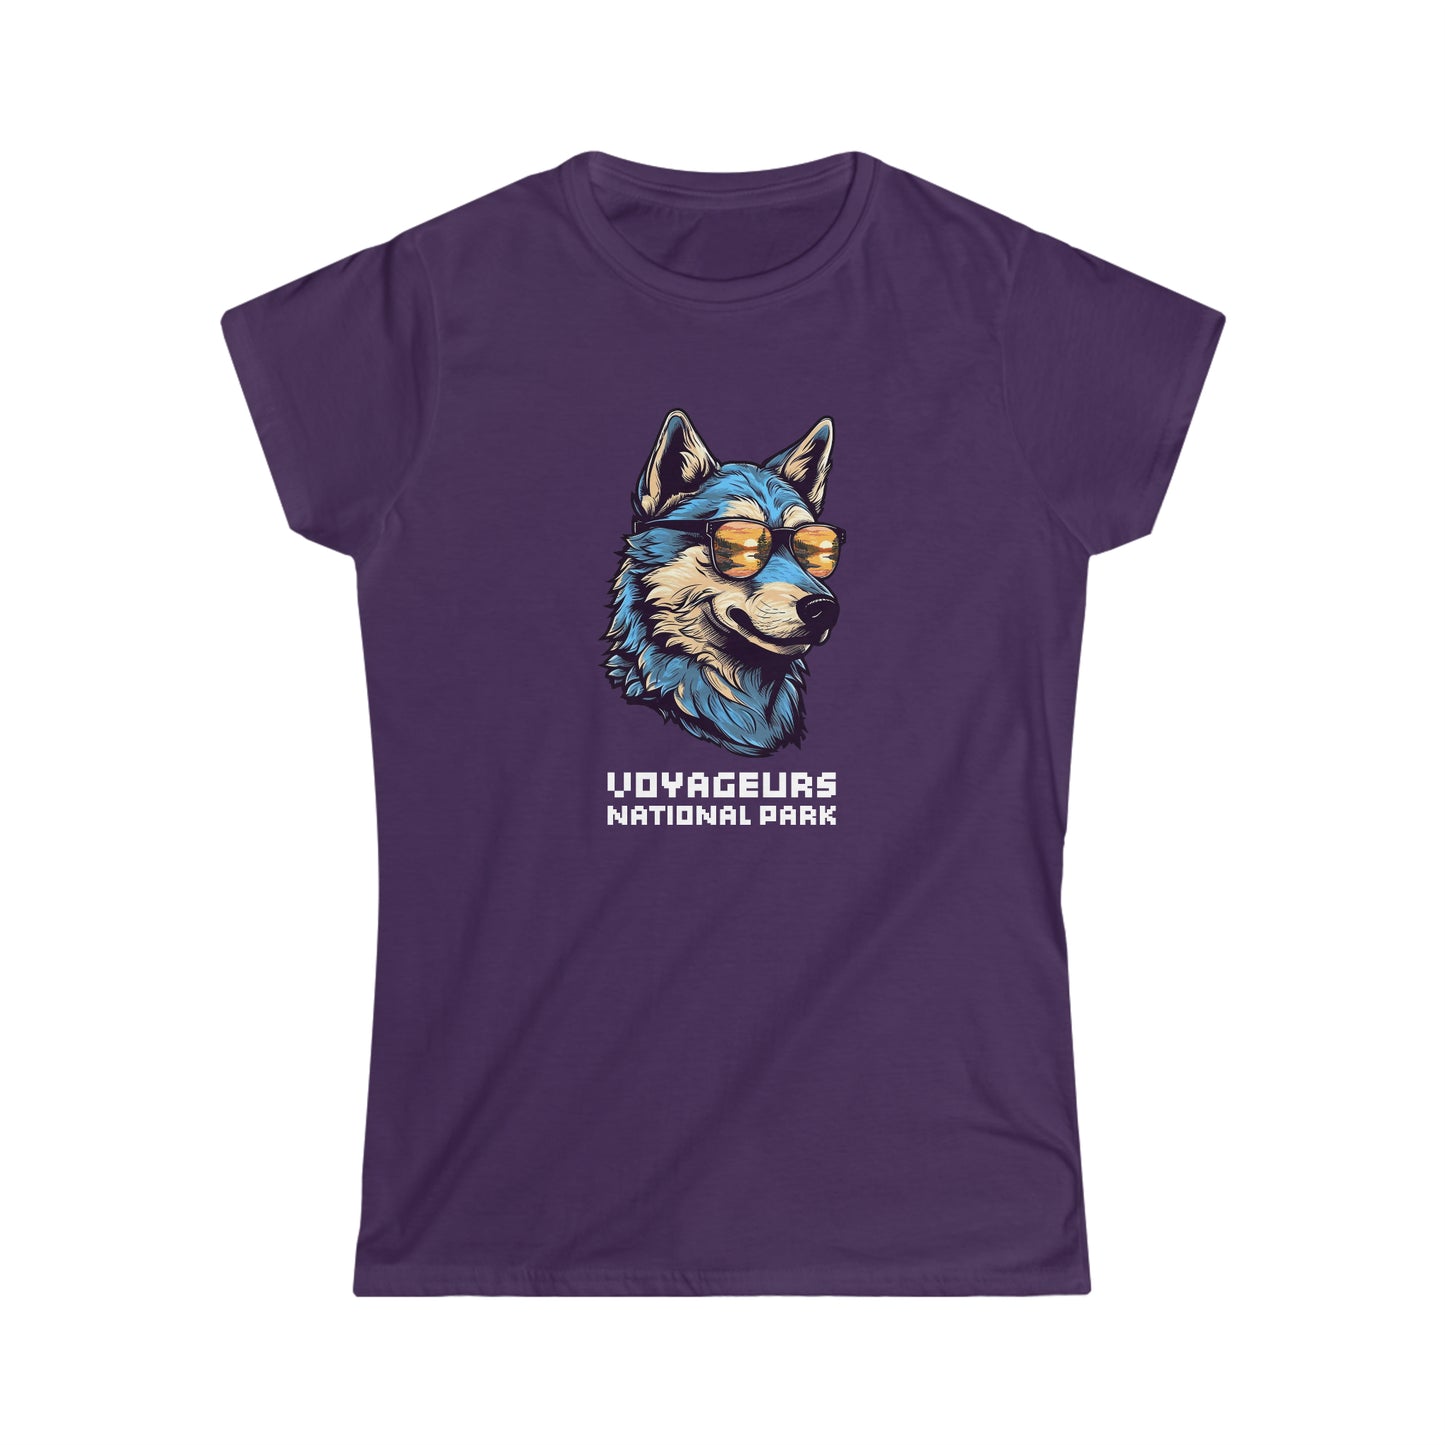 Voyageurs National Park Women's T-Shirt - Cool Wolf